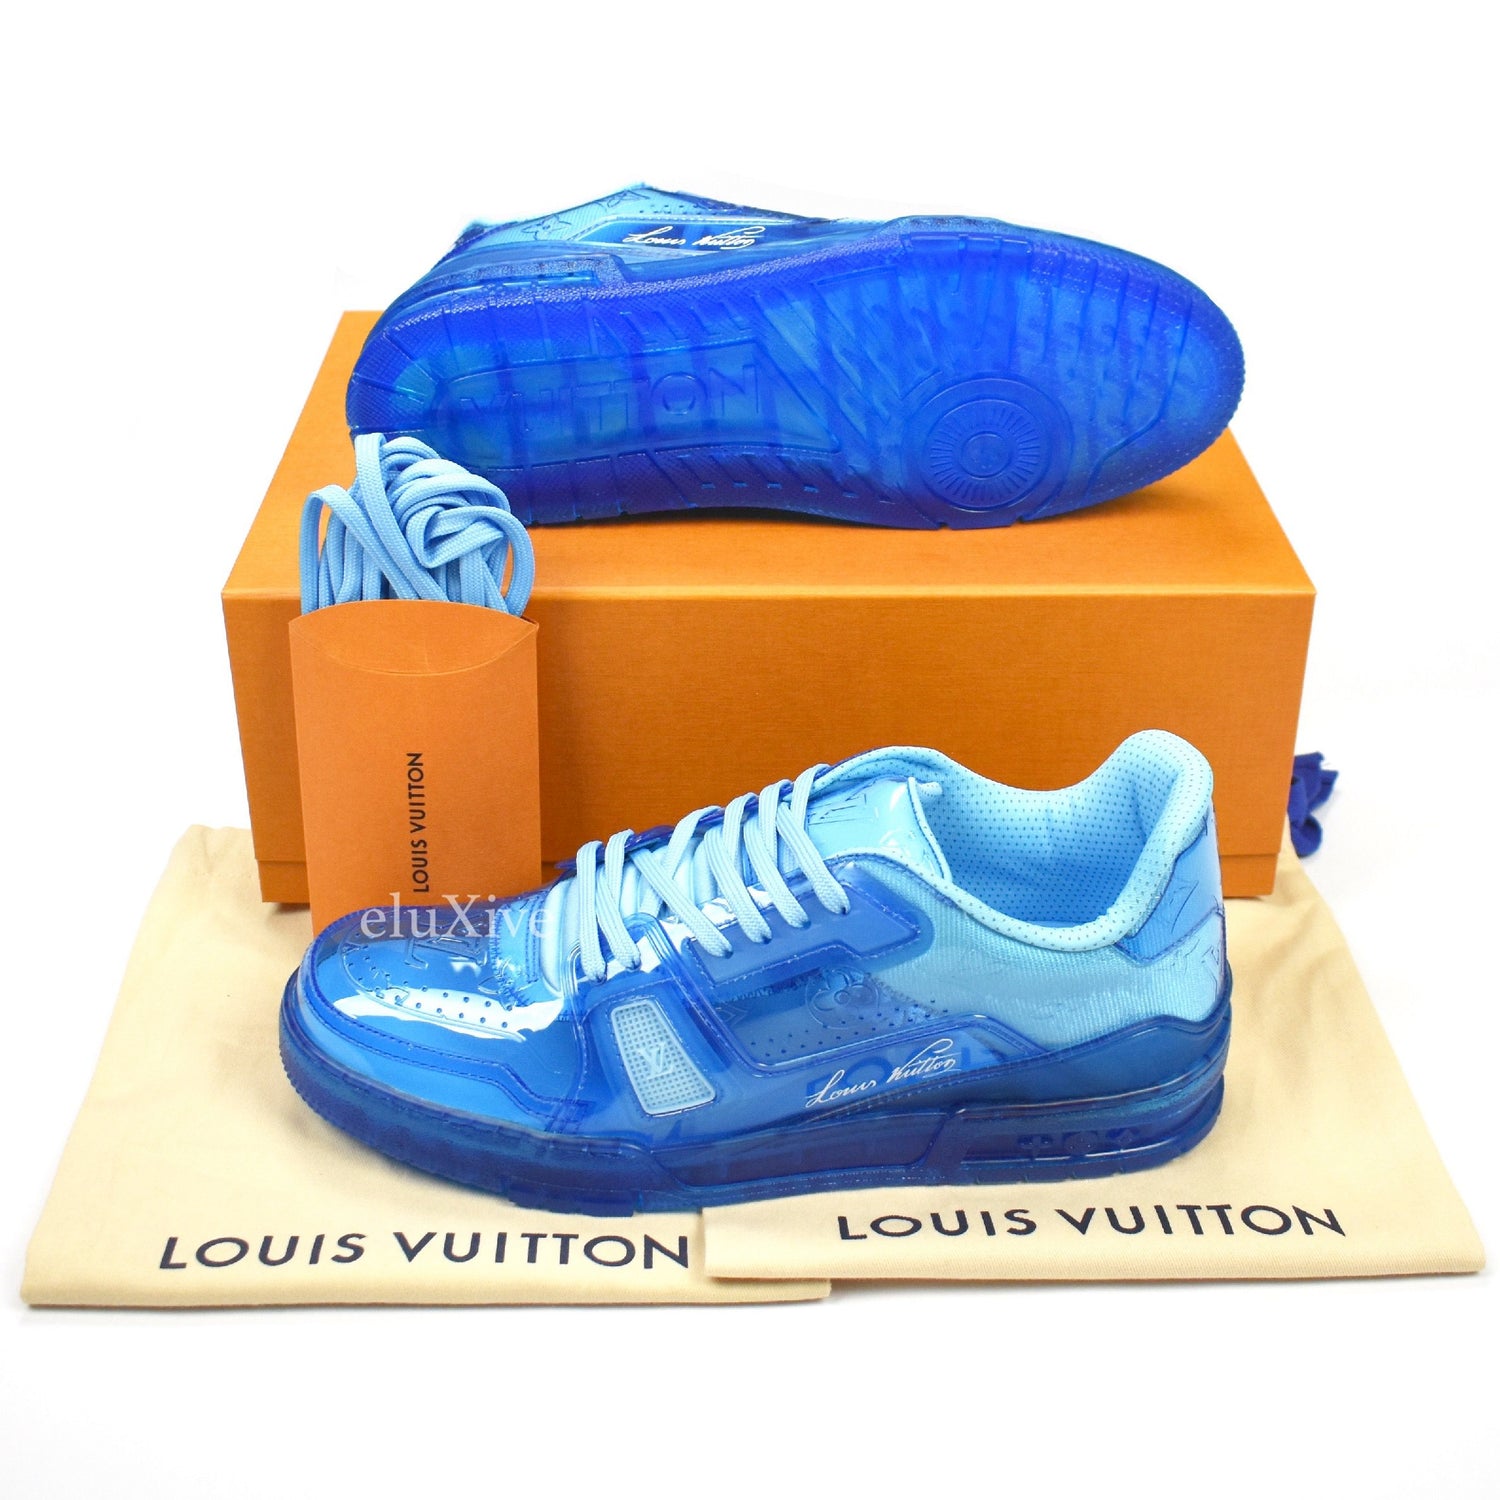 Virgil Abloh's Louis Vuitton LV Trainers  Blue & Pink Transparent Plastic  